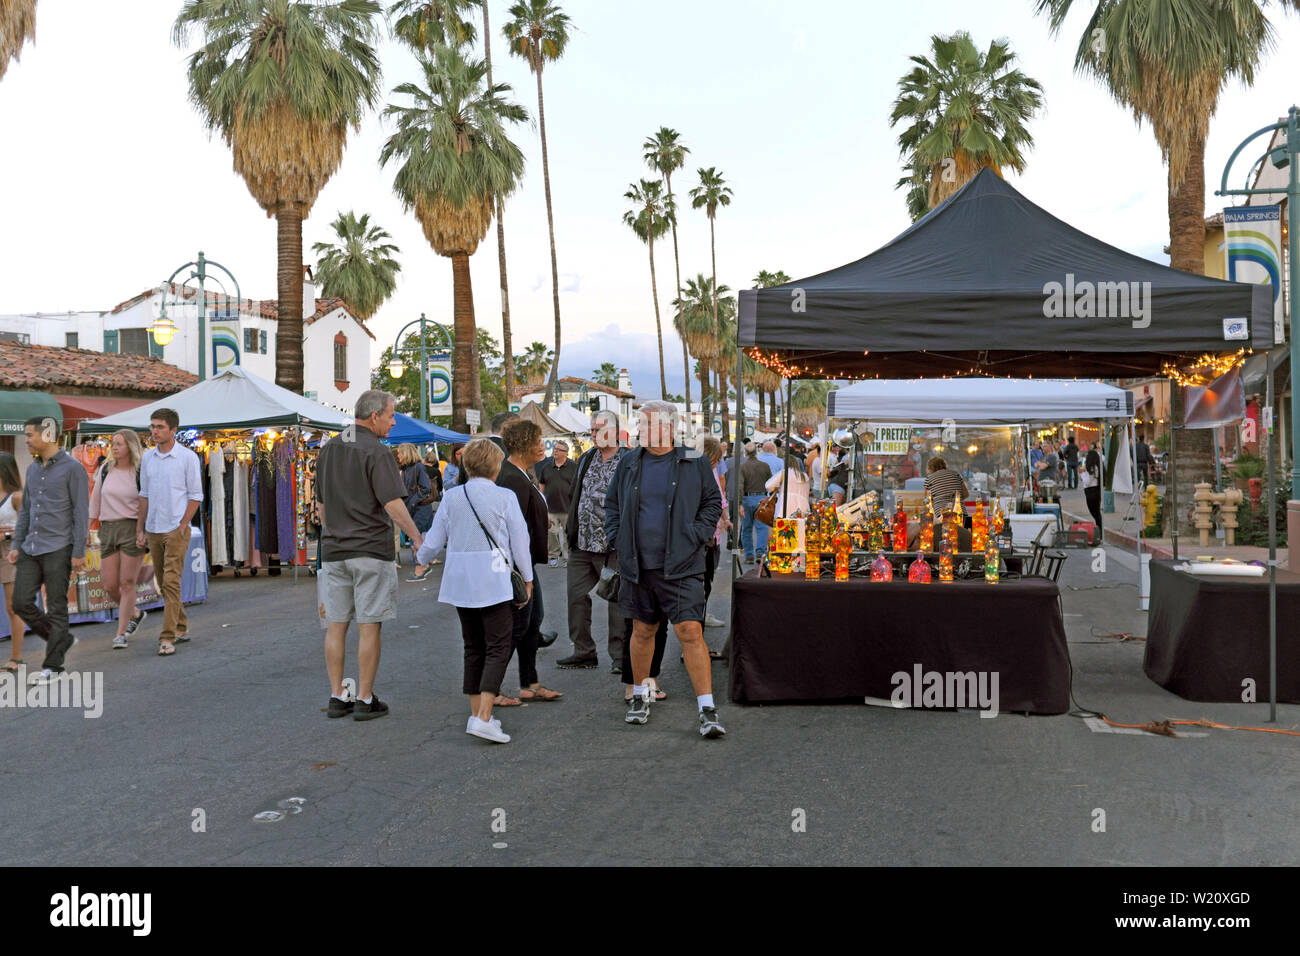 La gente disfruta del Villagefest en el centro de Palm Springs, California. La feria de jueves por la noche ofrece arte, artesanía, comida y entretenimiento. Foto de stock